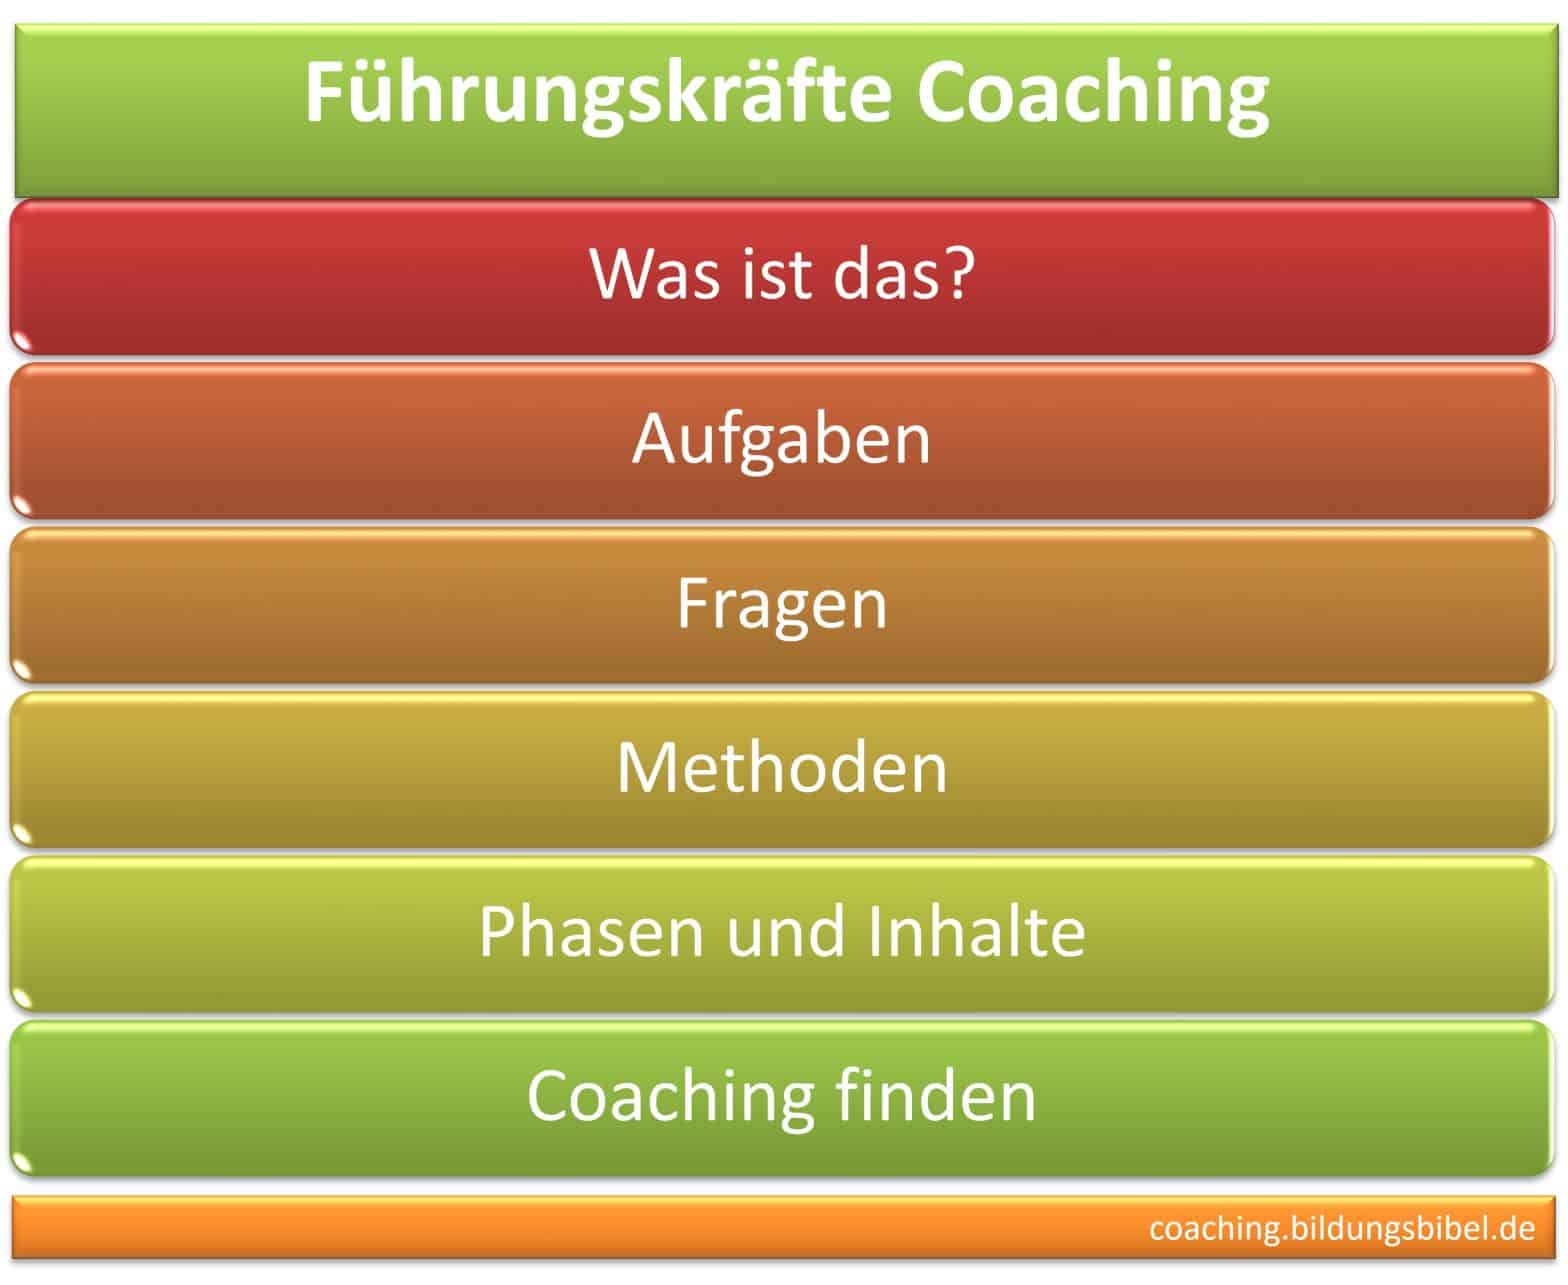 Führungskräfte Coaching, Ziele, Inhalte, Aufgaben, Methoden, Phasen im Coaching, Coach für Führungscoaching finden.